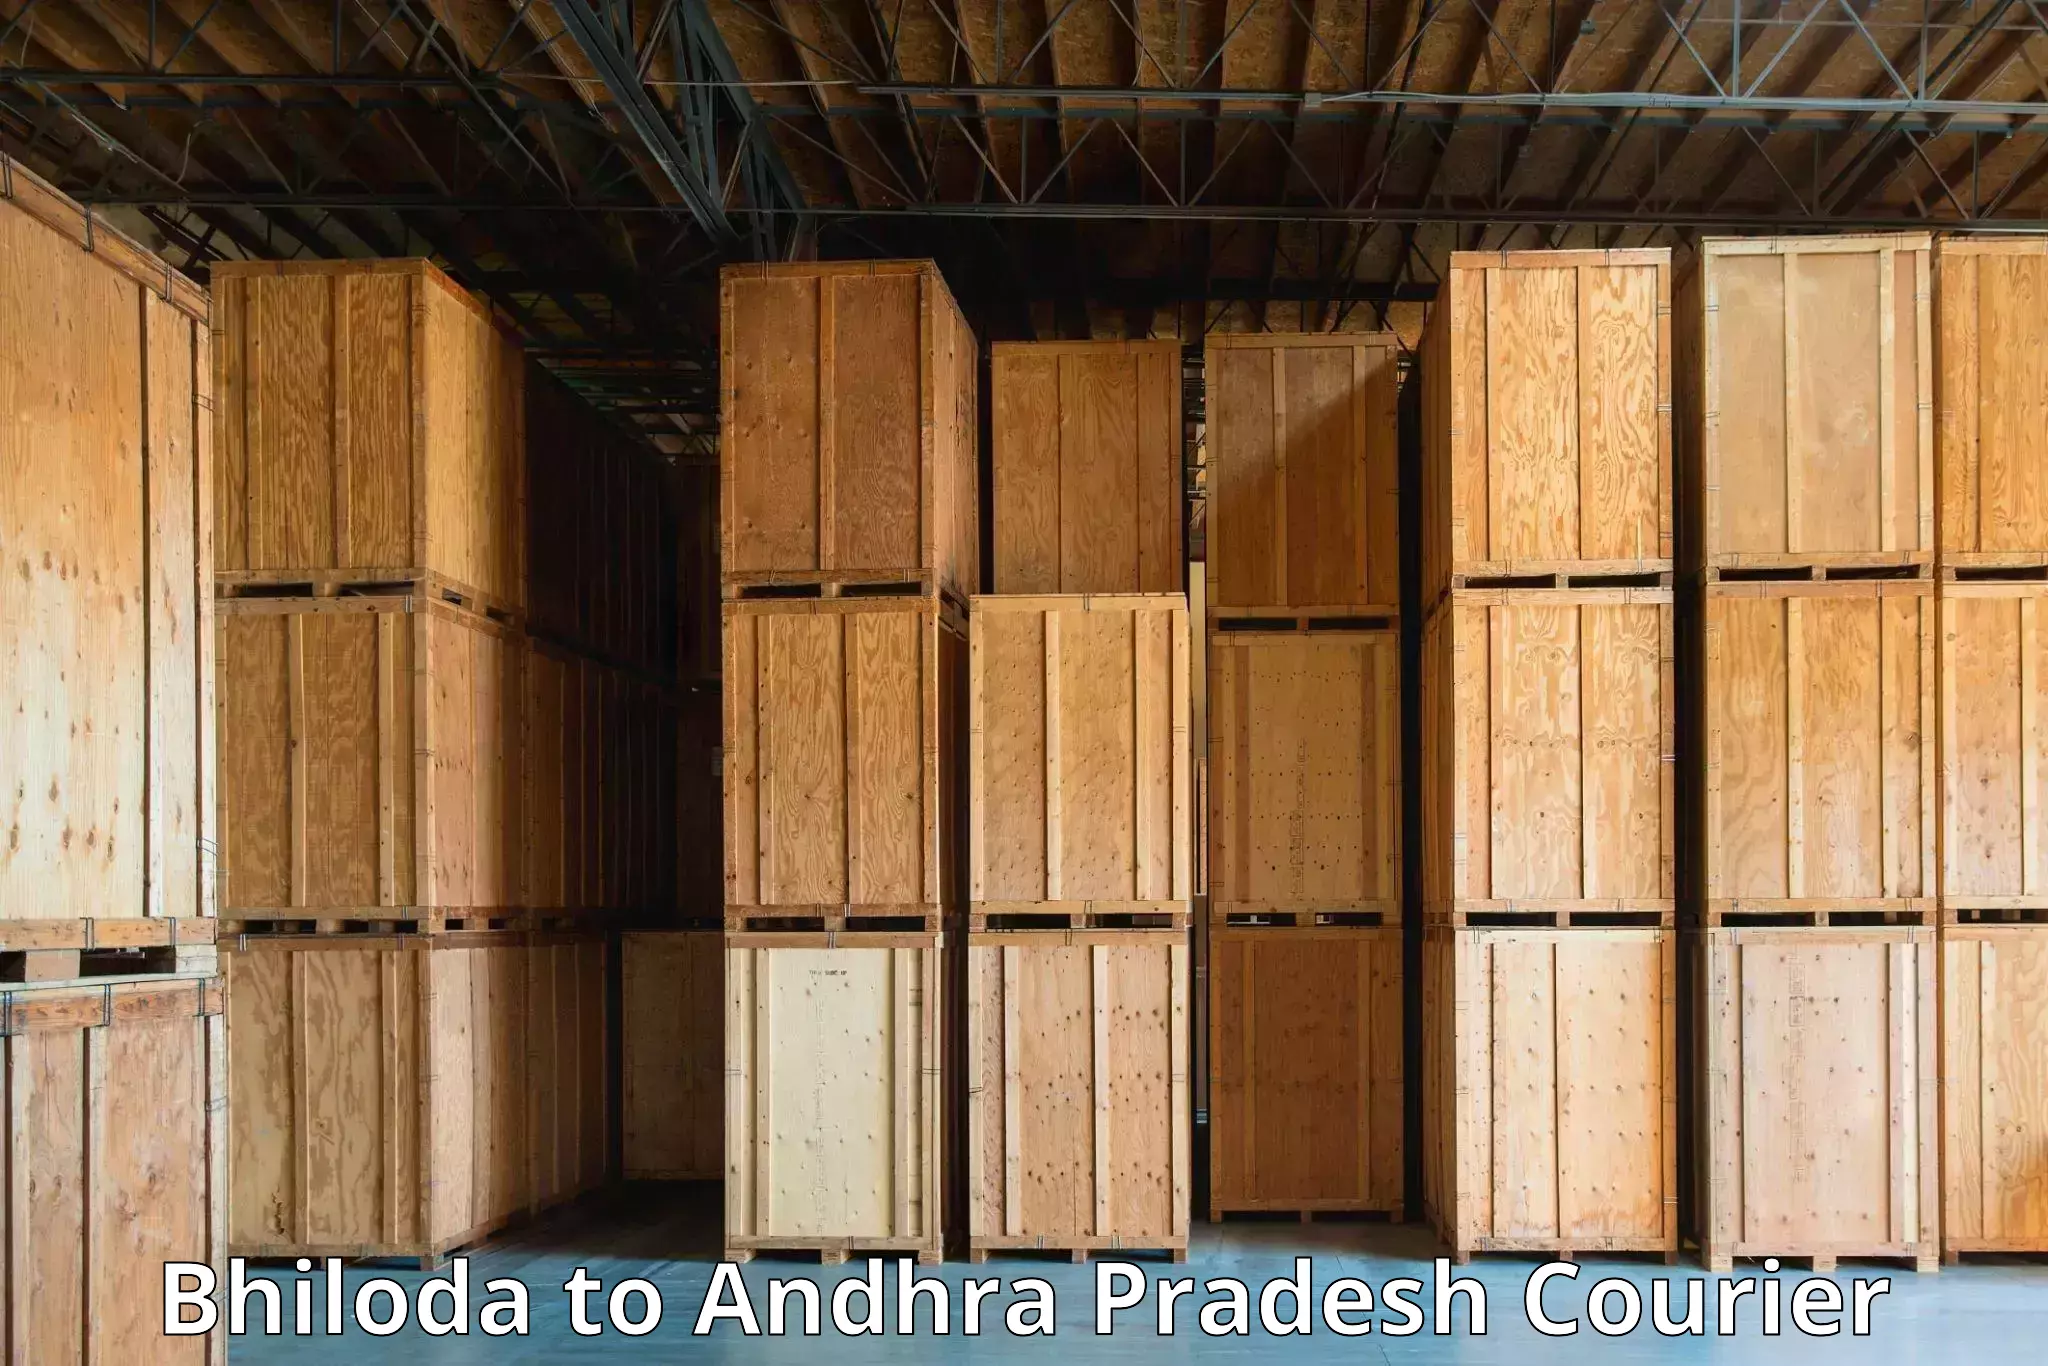 Expedited shipping methods Bhiloda to Puttur Tirupati